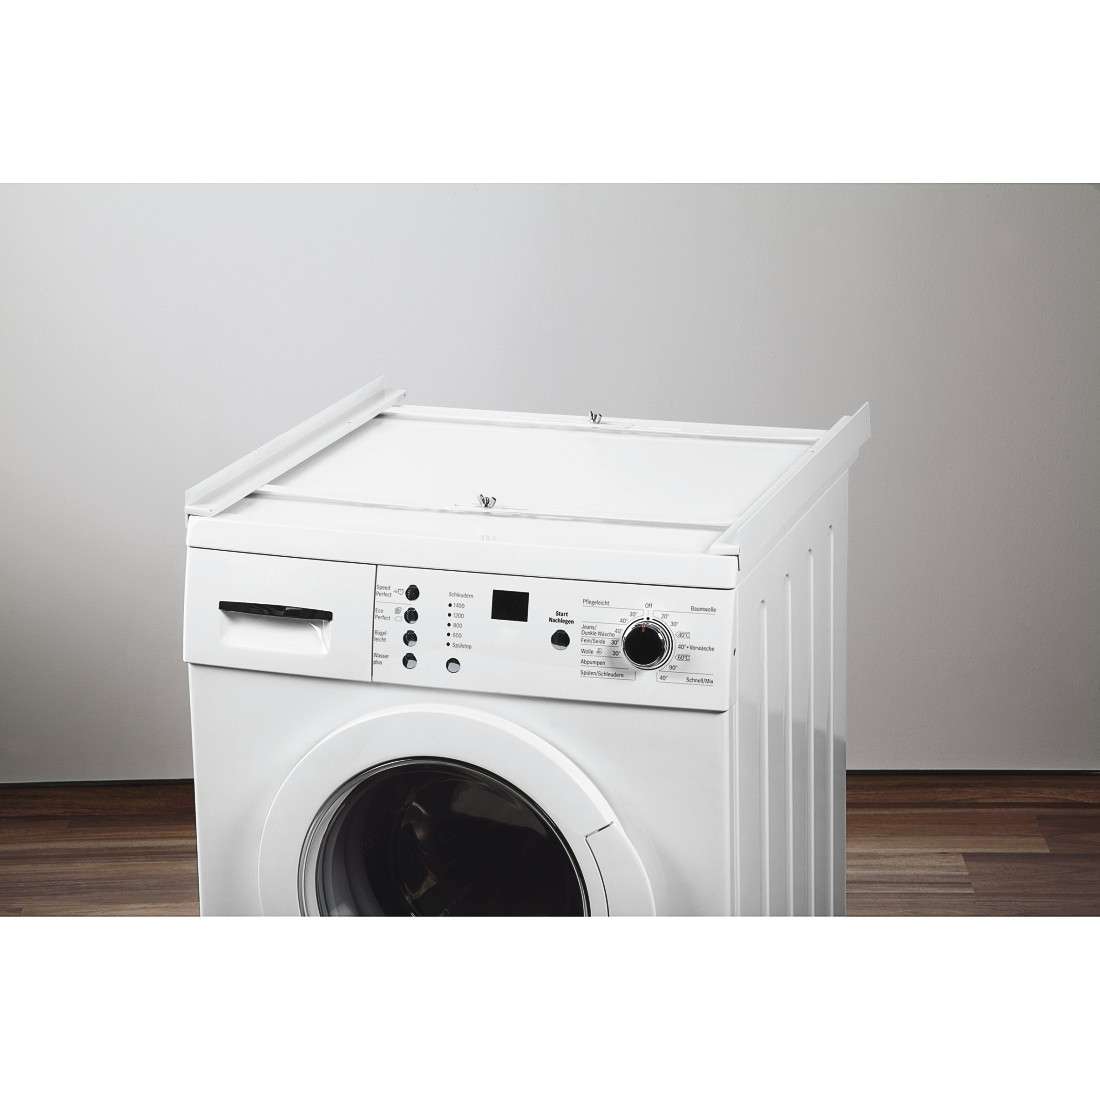 Zwischenbaurahmen (offene Front) für Waschmaschine und Trockner, 55 - 66 cm